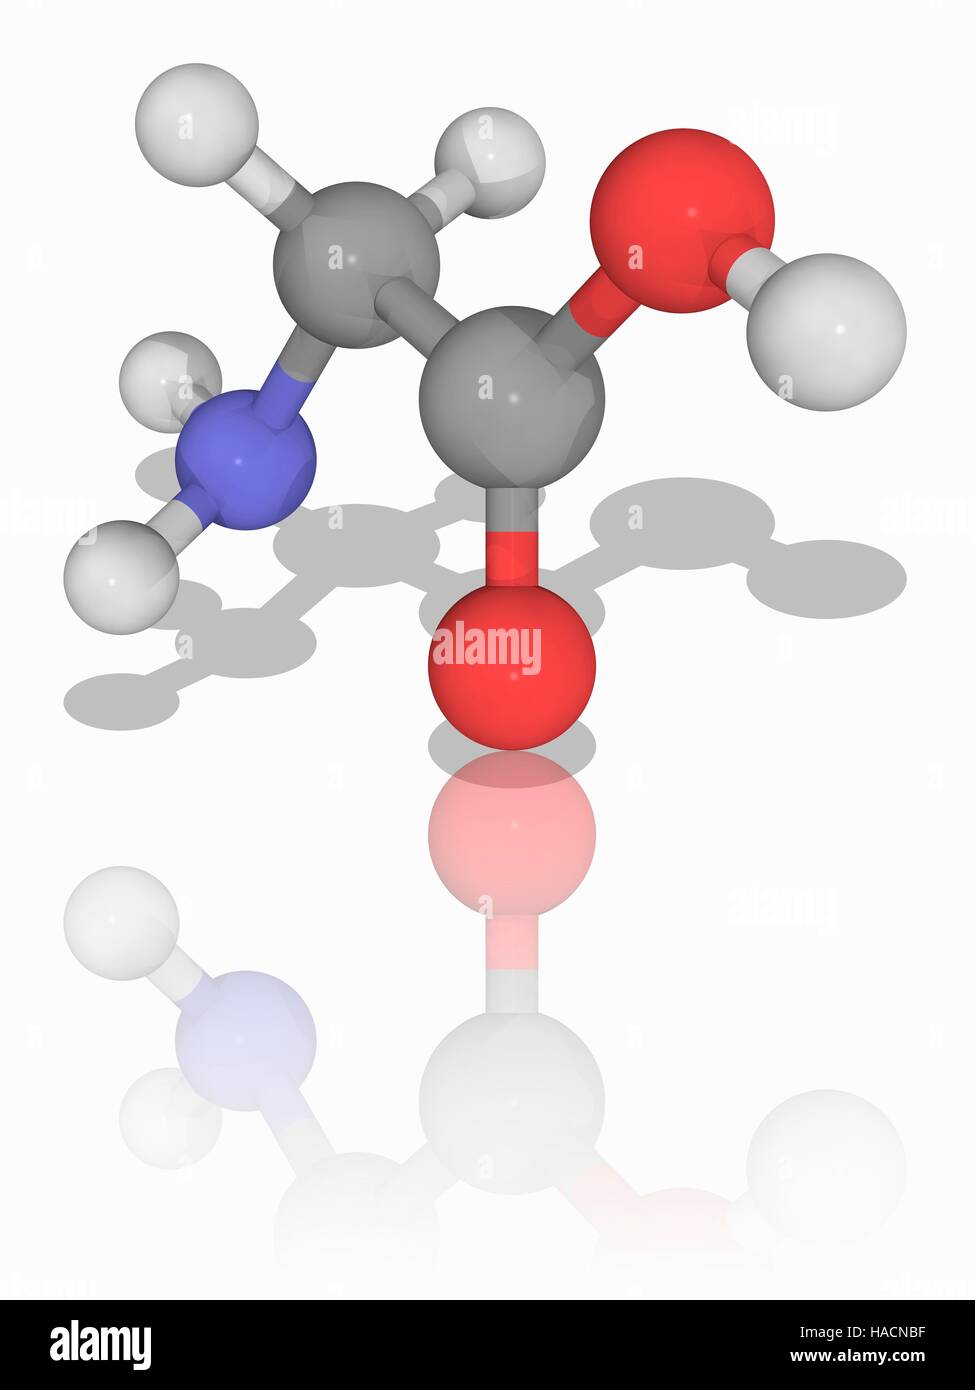 Glycin. Molekülmodell der Aminosäure Glycin (C2. H5. N.O2). Dies ist die kleinste der zwanzig Aminosäuren in den Proteinen gefunden. Atome als Kugeln dargestellt werden und sind farblich gekennzeichnet: Kohlenstoff (grau), Wasserstoff (weiß), Stickstoff (blau) und Sauerstoff (rot). Abbildung. Stockfoto